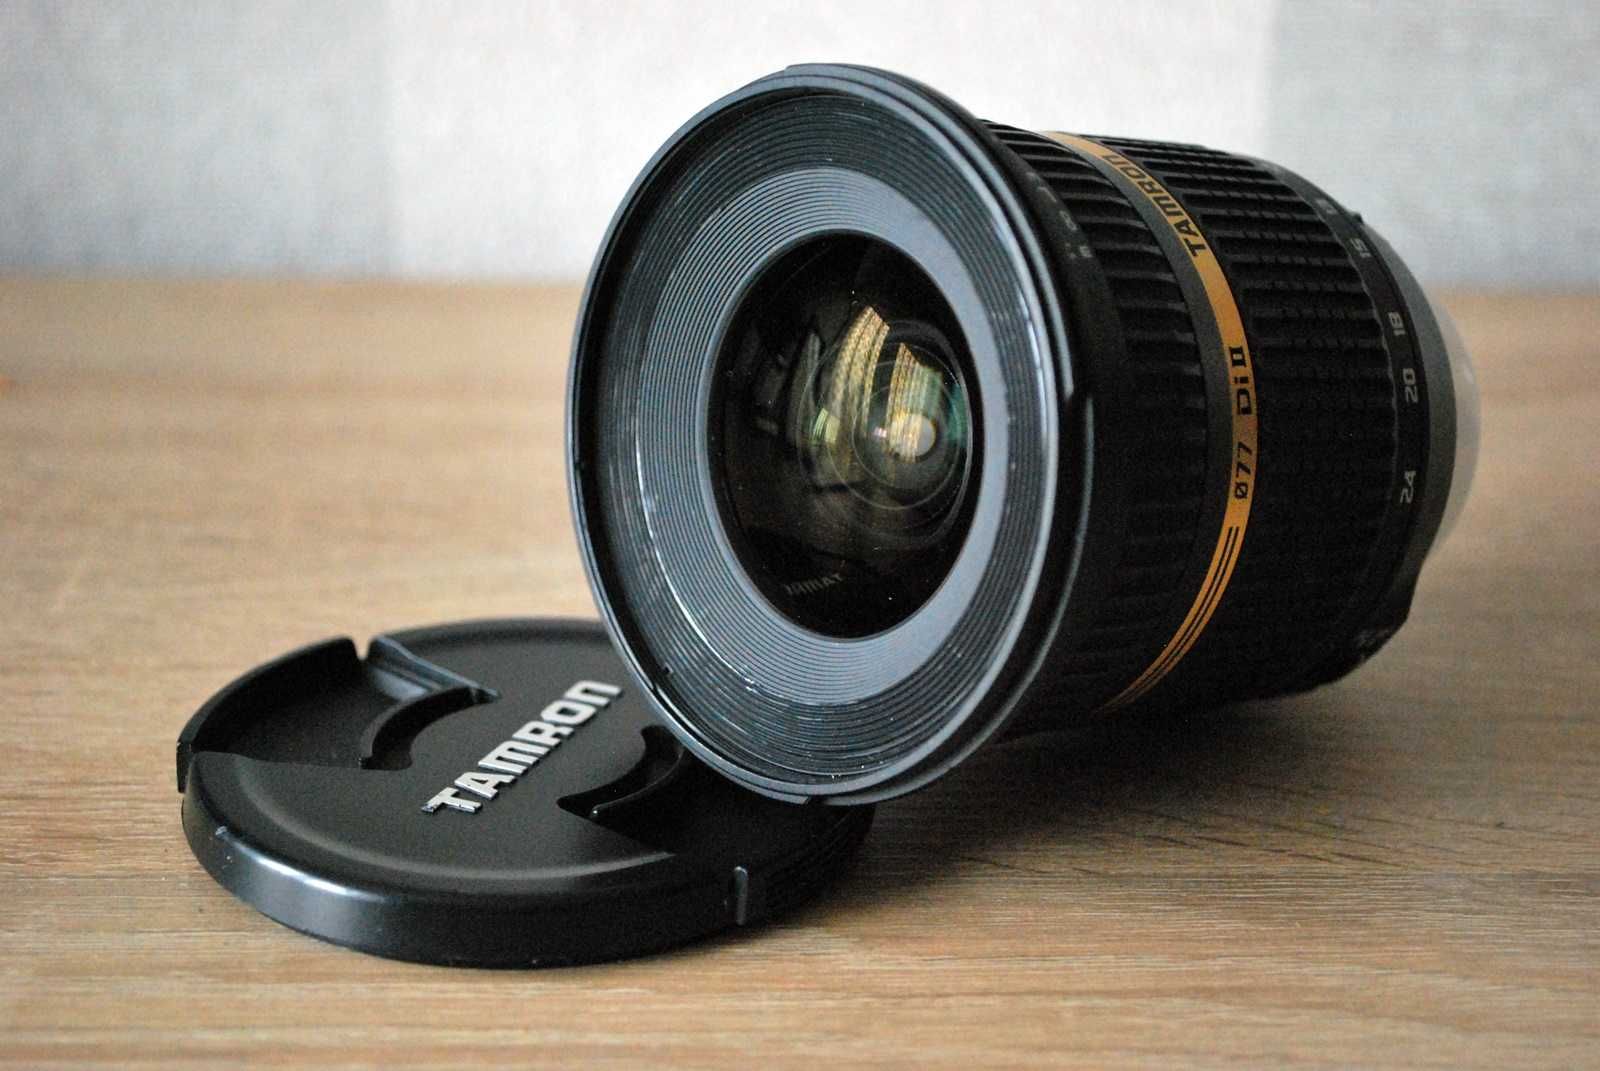 Obiektyw szerokokątny do Nikona
-Tamron SP 10-24mm